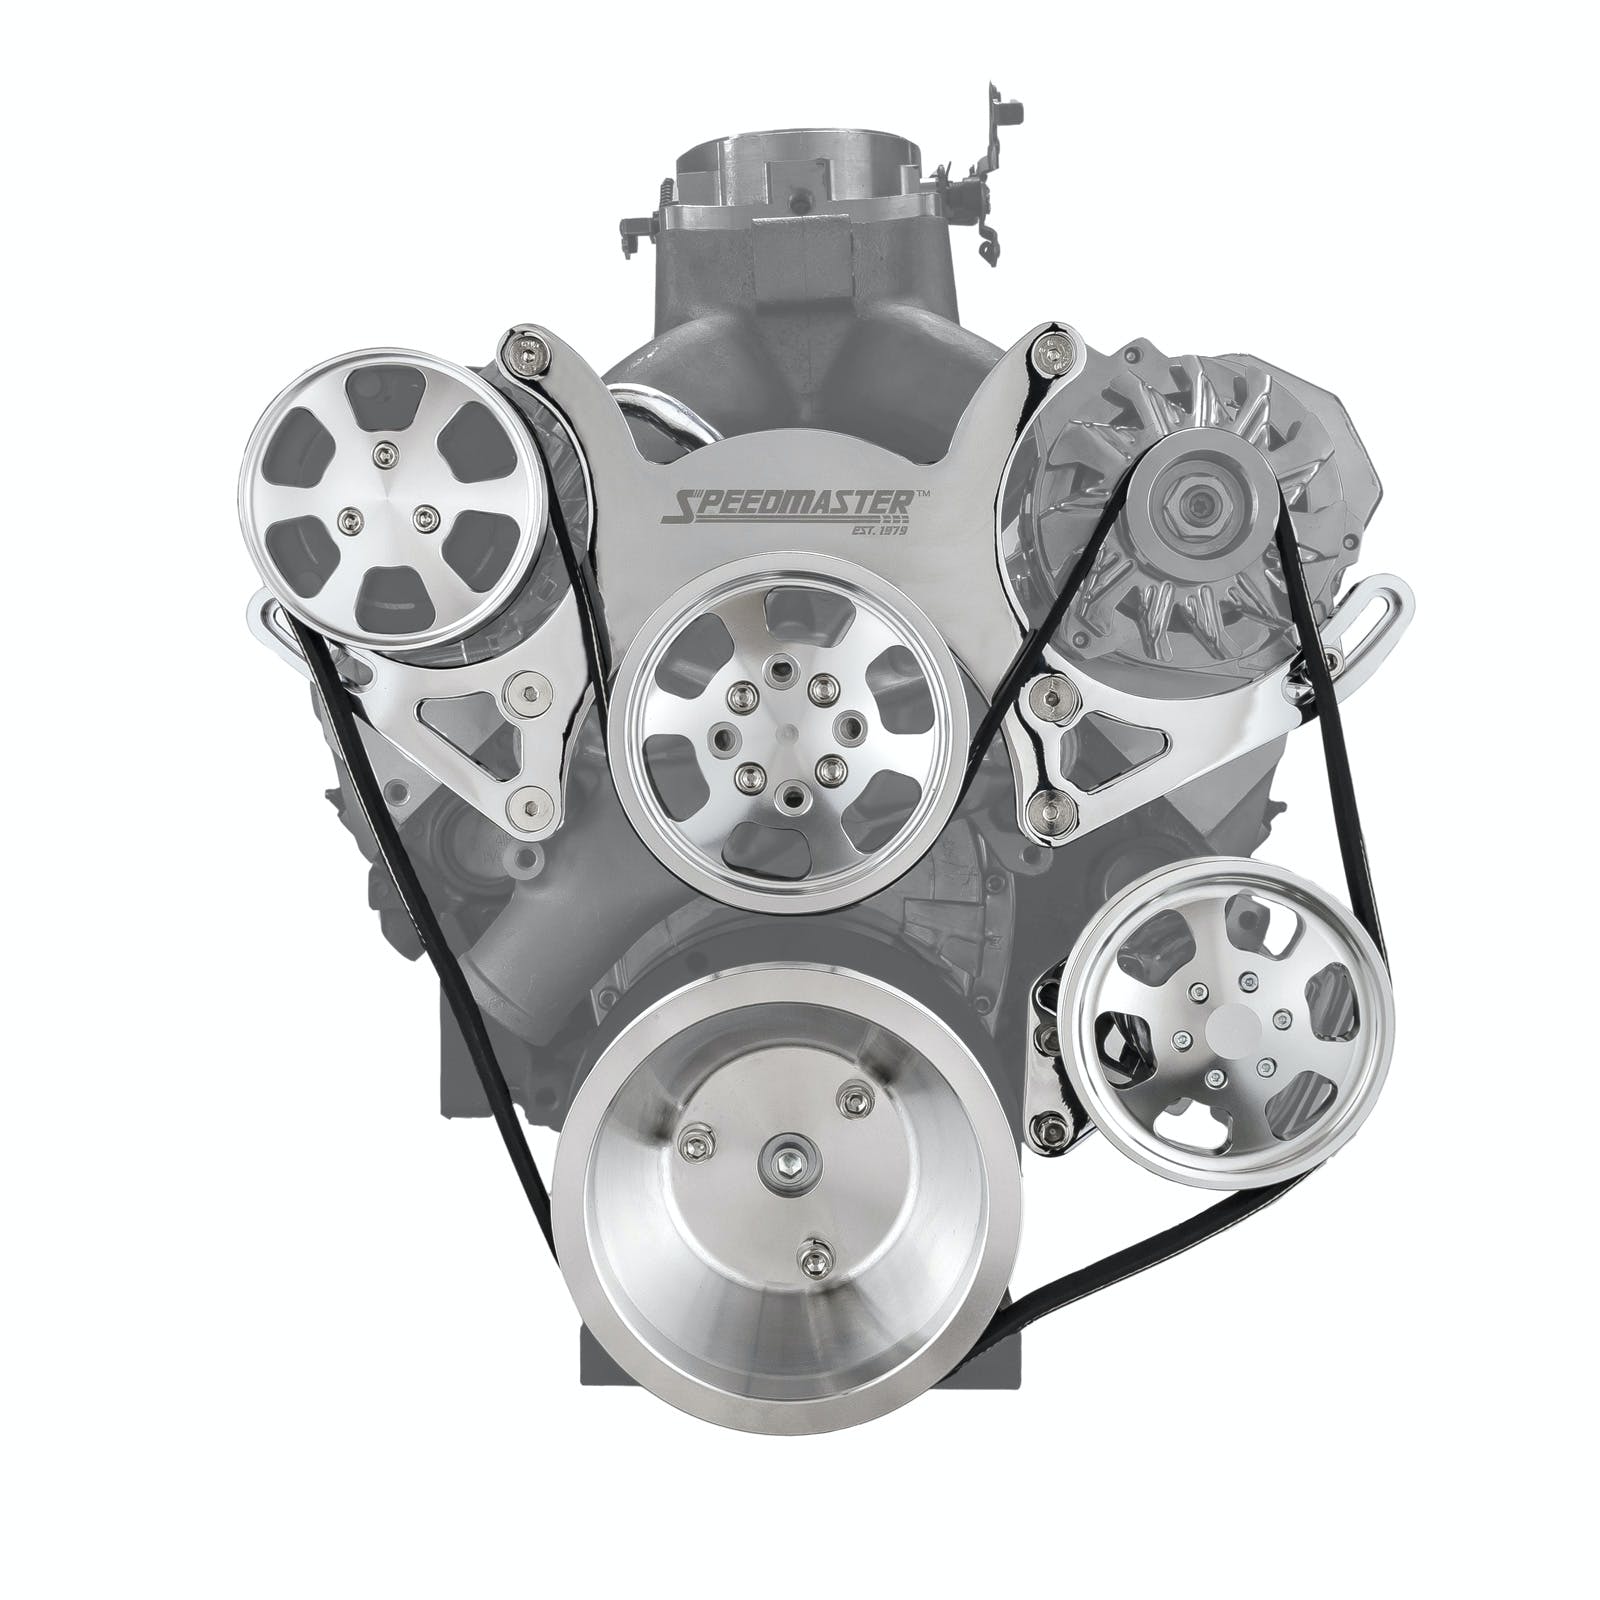 Speedmaster 1-415-001-01 Aluminum Serpentine Complete Engine Pulley Kit [Polished]